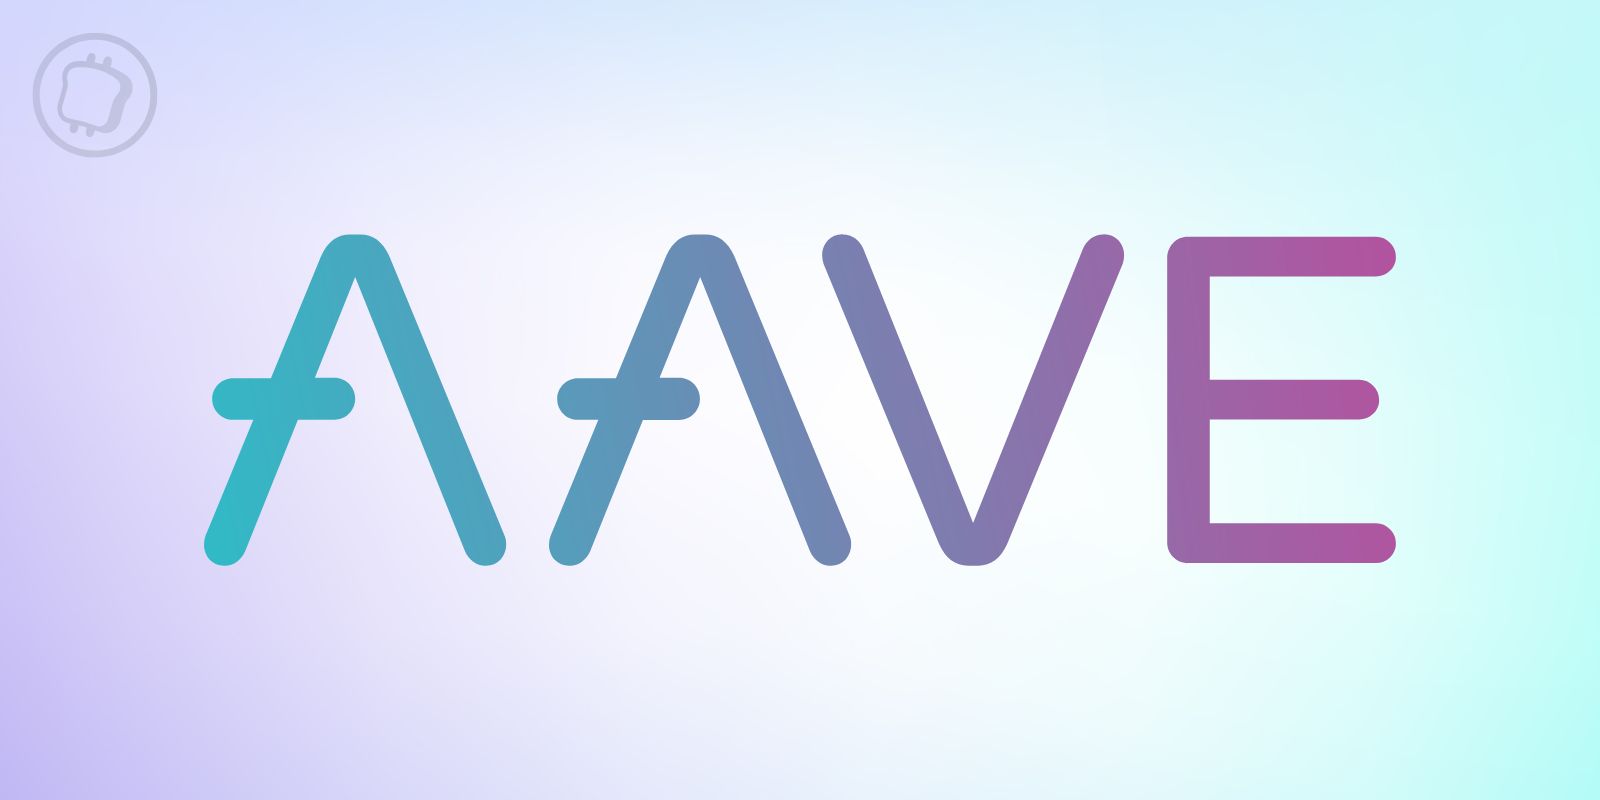 Web3 et réseaux sociaux : Aave rachète Sonar, un projet metaverse pour mobiles